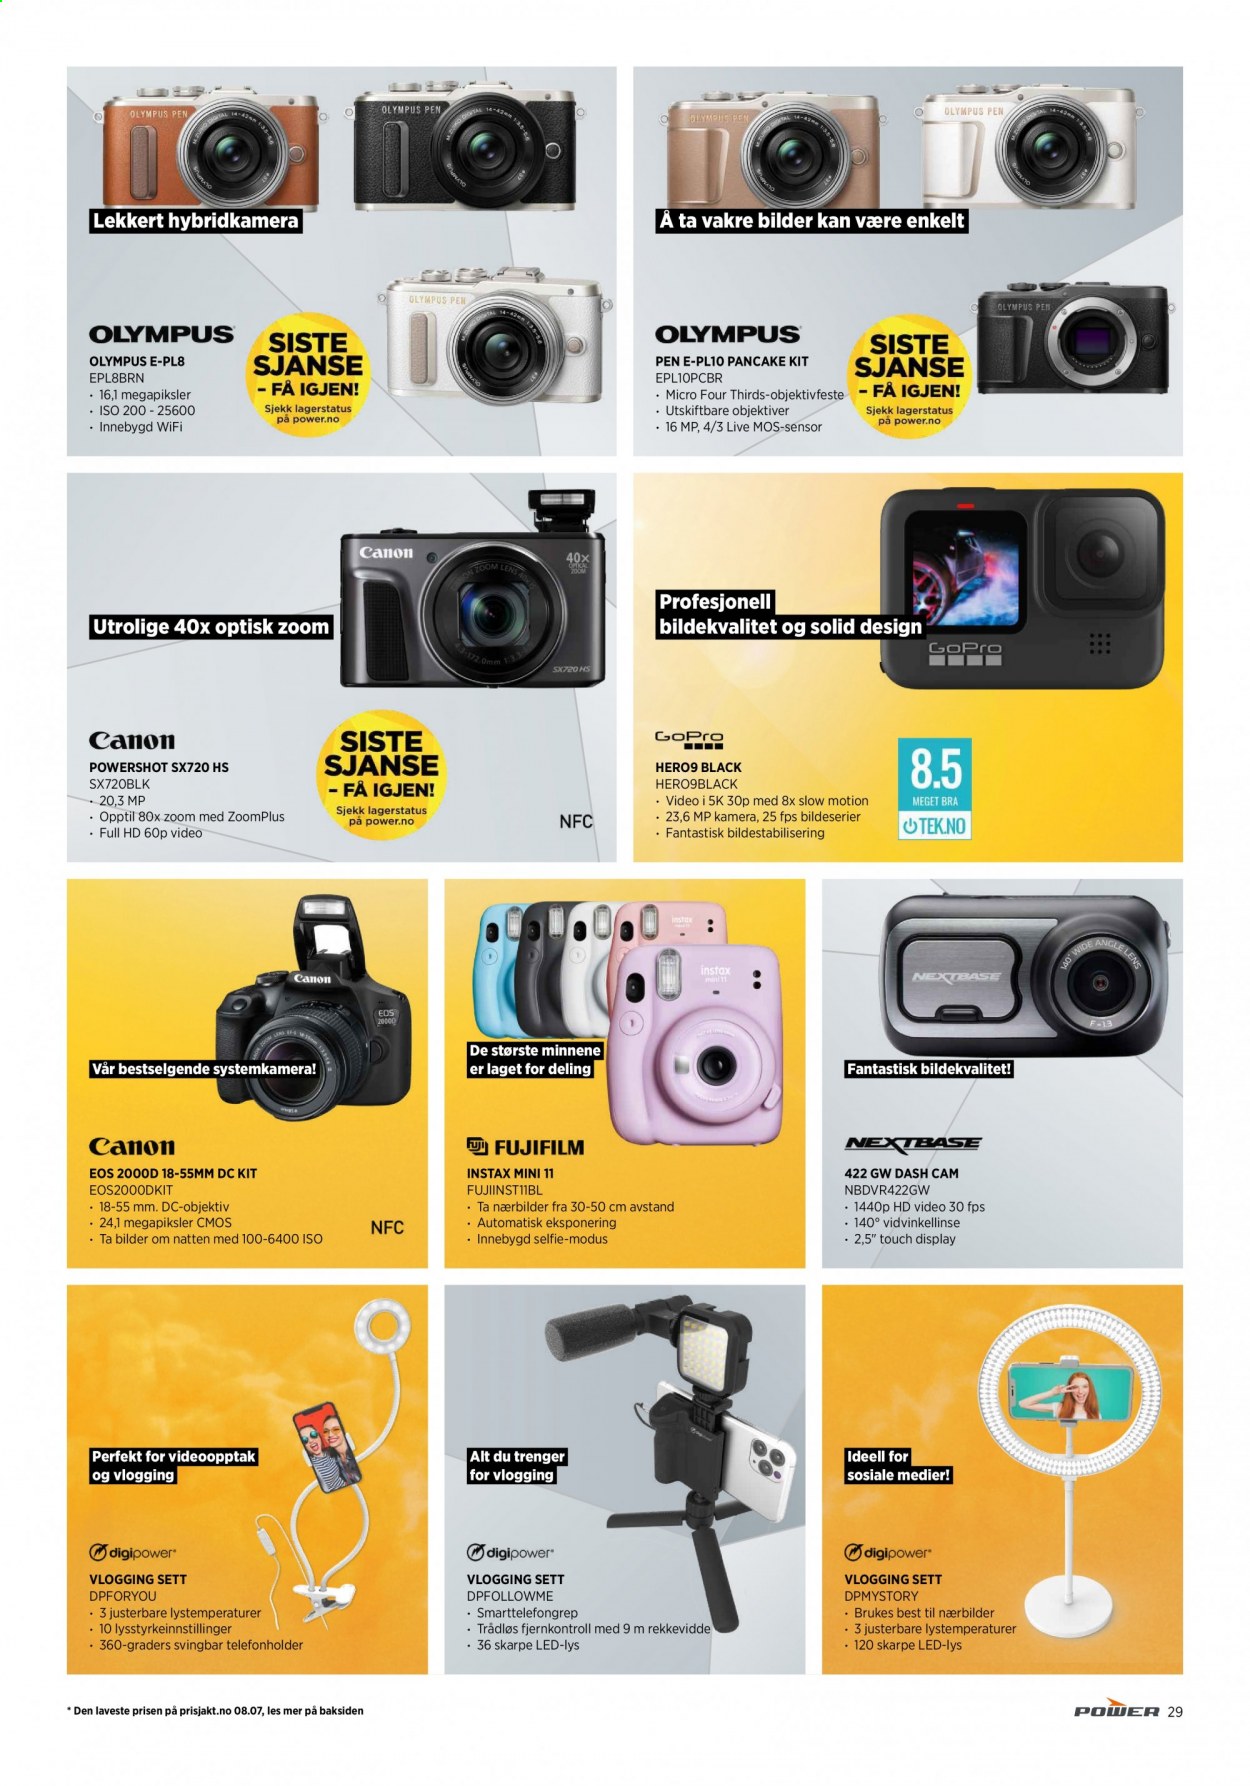 thumbnail - Kundeavis Power - 17.7.2021 - 24.7.2021 - Produkter fra tilbudsaviser - Canon, GoPro, kamera, mobilholder, Canon PowerShot, systemkamera, hybridkamera. Side 29.